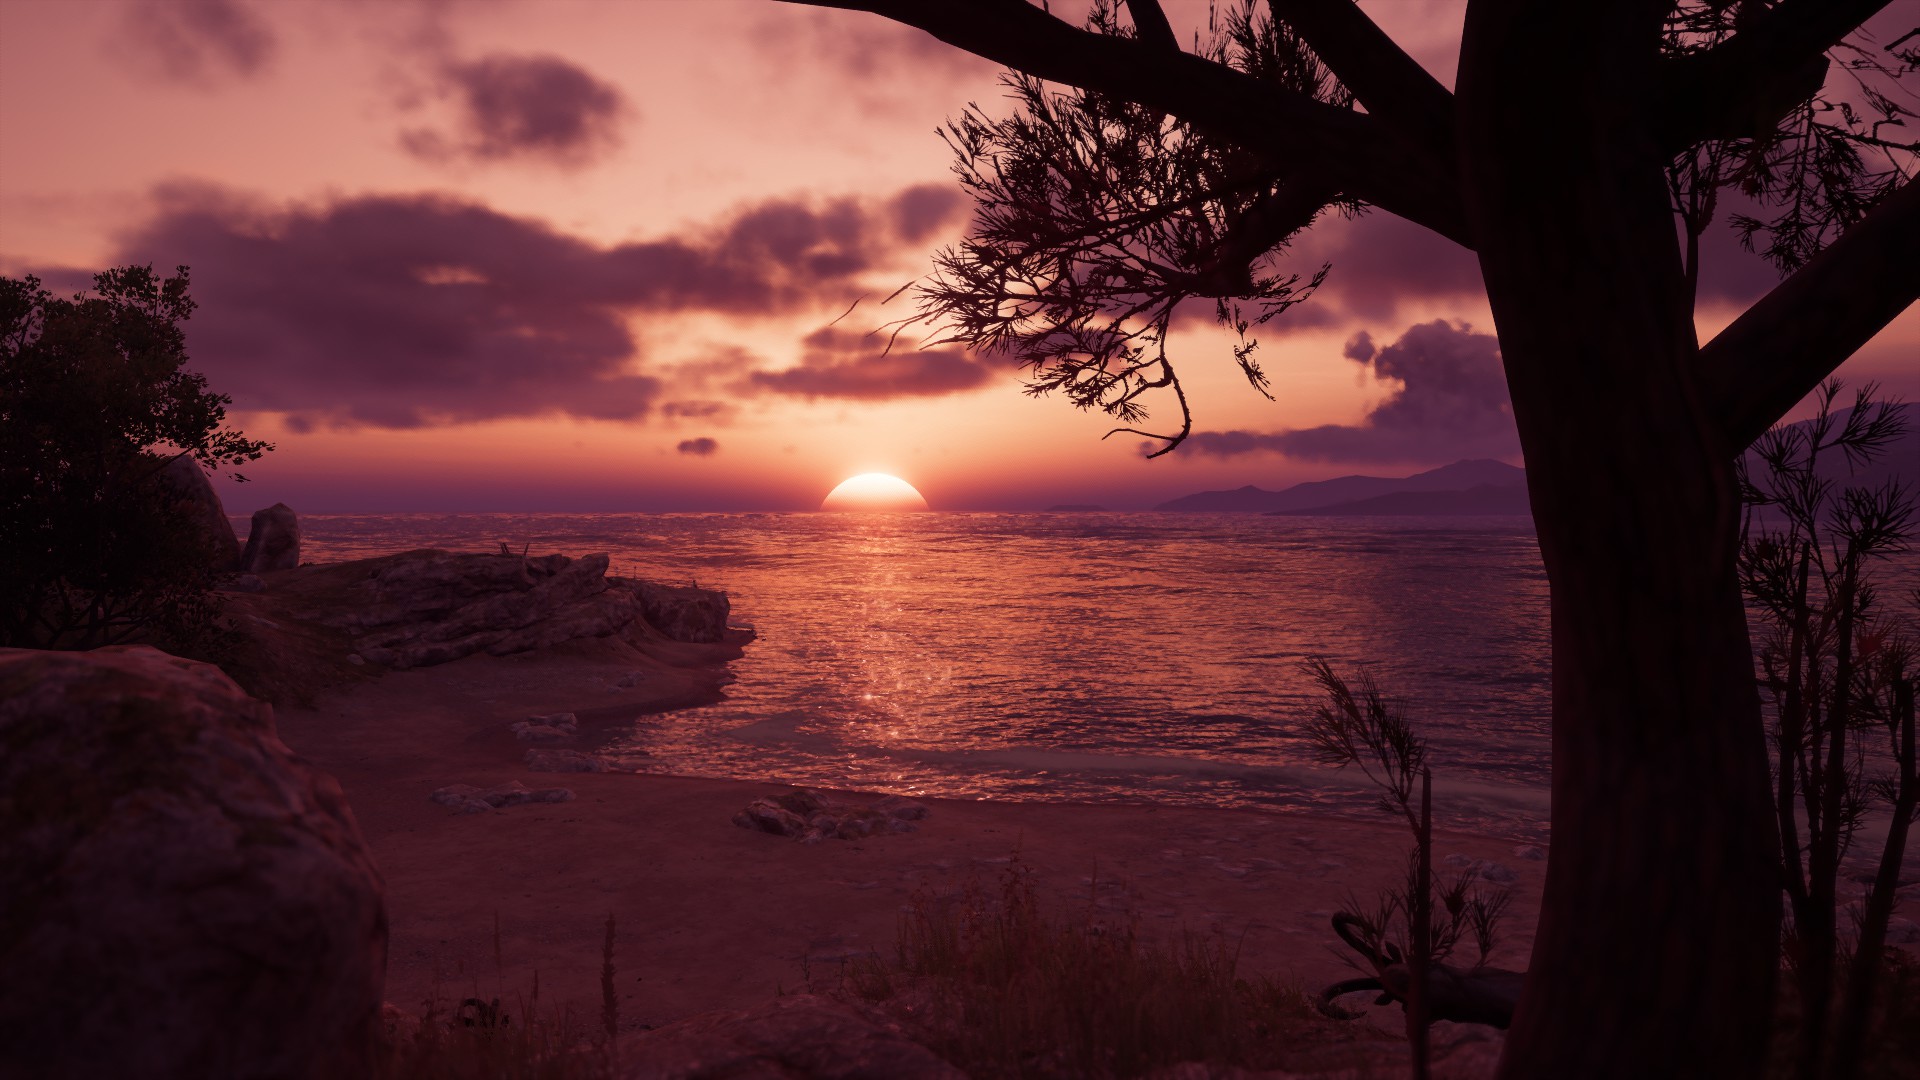 Assassins Creed Sun Rays Greece Sunset Beach Landscape Assassins Creed